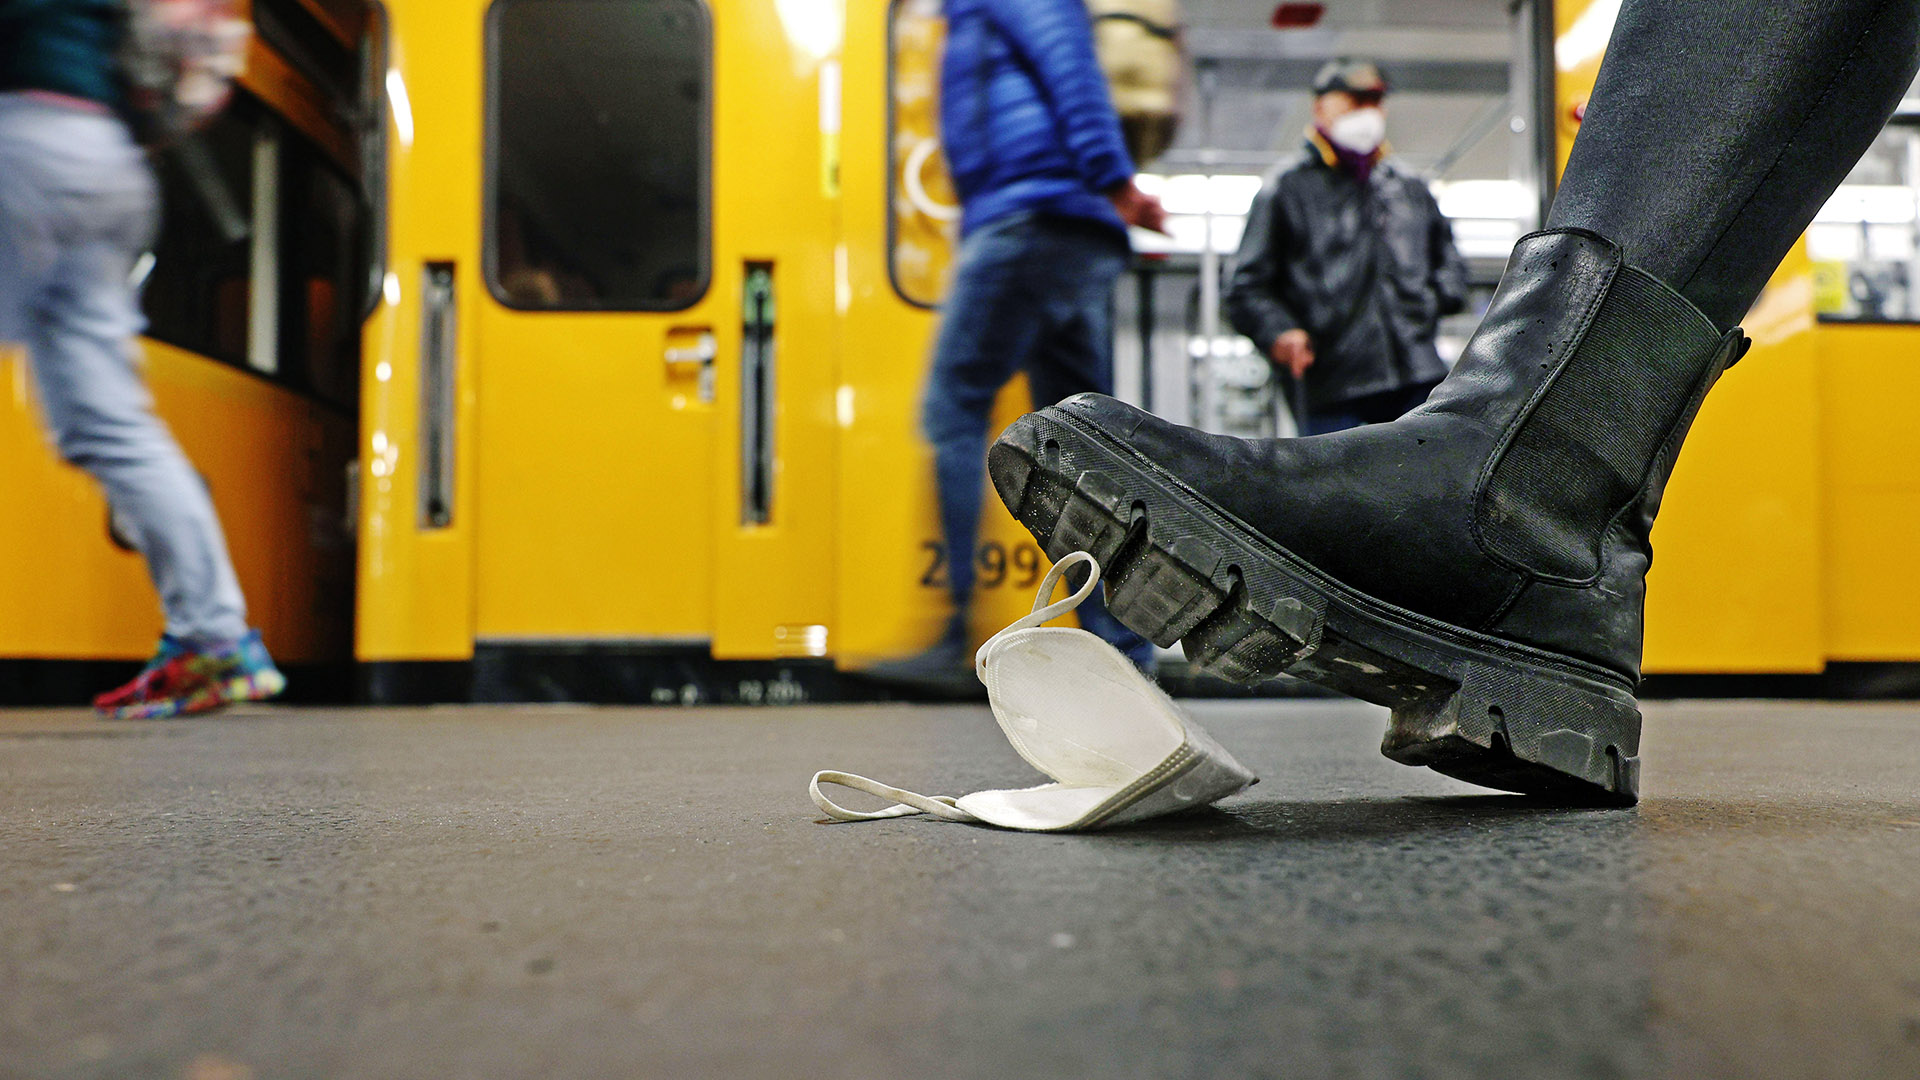 Symbolbild:Auf einem Bahnsteig vor einer haltenden U-Bahn tritt ein Stiefel auf eine am Boden liegende FFP2-Maske.(Quelle:imago images/S.Gudath)